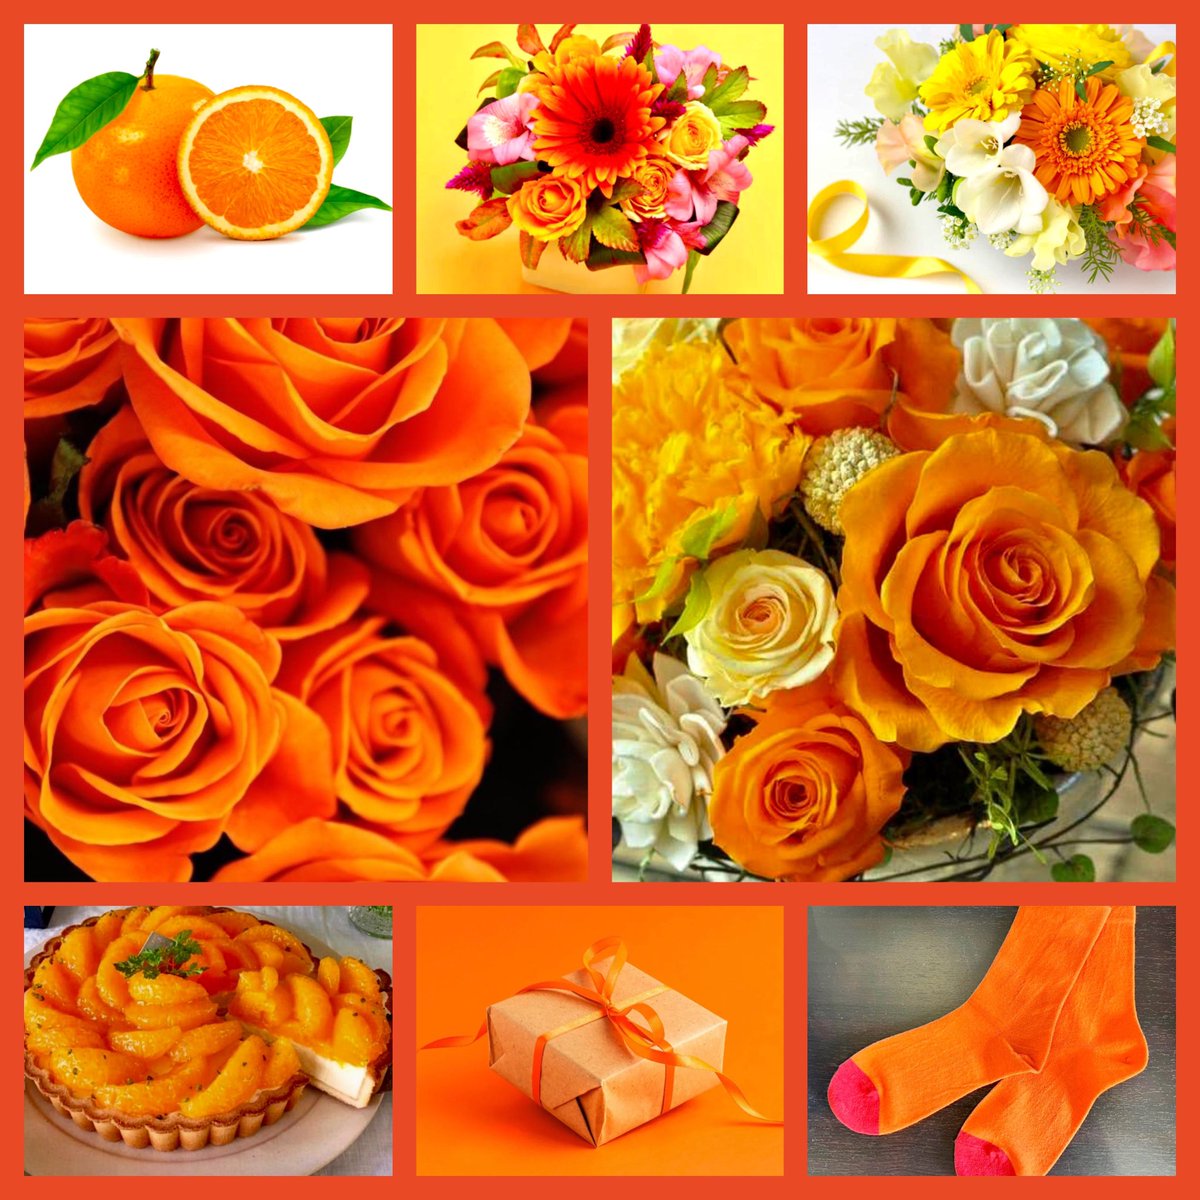 ※今日は何の日

2月14日：バレンタインデー
愛を告白し💚
3月14日：ホワイトデー
愛に答え🩷

4月14日：『オレンジデー』
愛を深め合って欲しいから🧡

『第3の愛の記念日』

「オレンジデー」とは大切な人とオレンジ色のものを贈り合う日本独自の記念日🧡🍊🧡

花言葉：花嫁の喜び

#オレンジデー